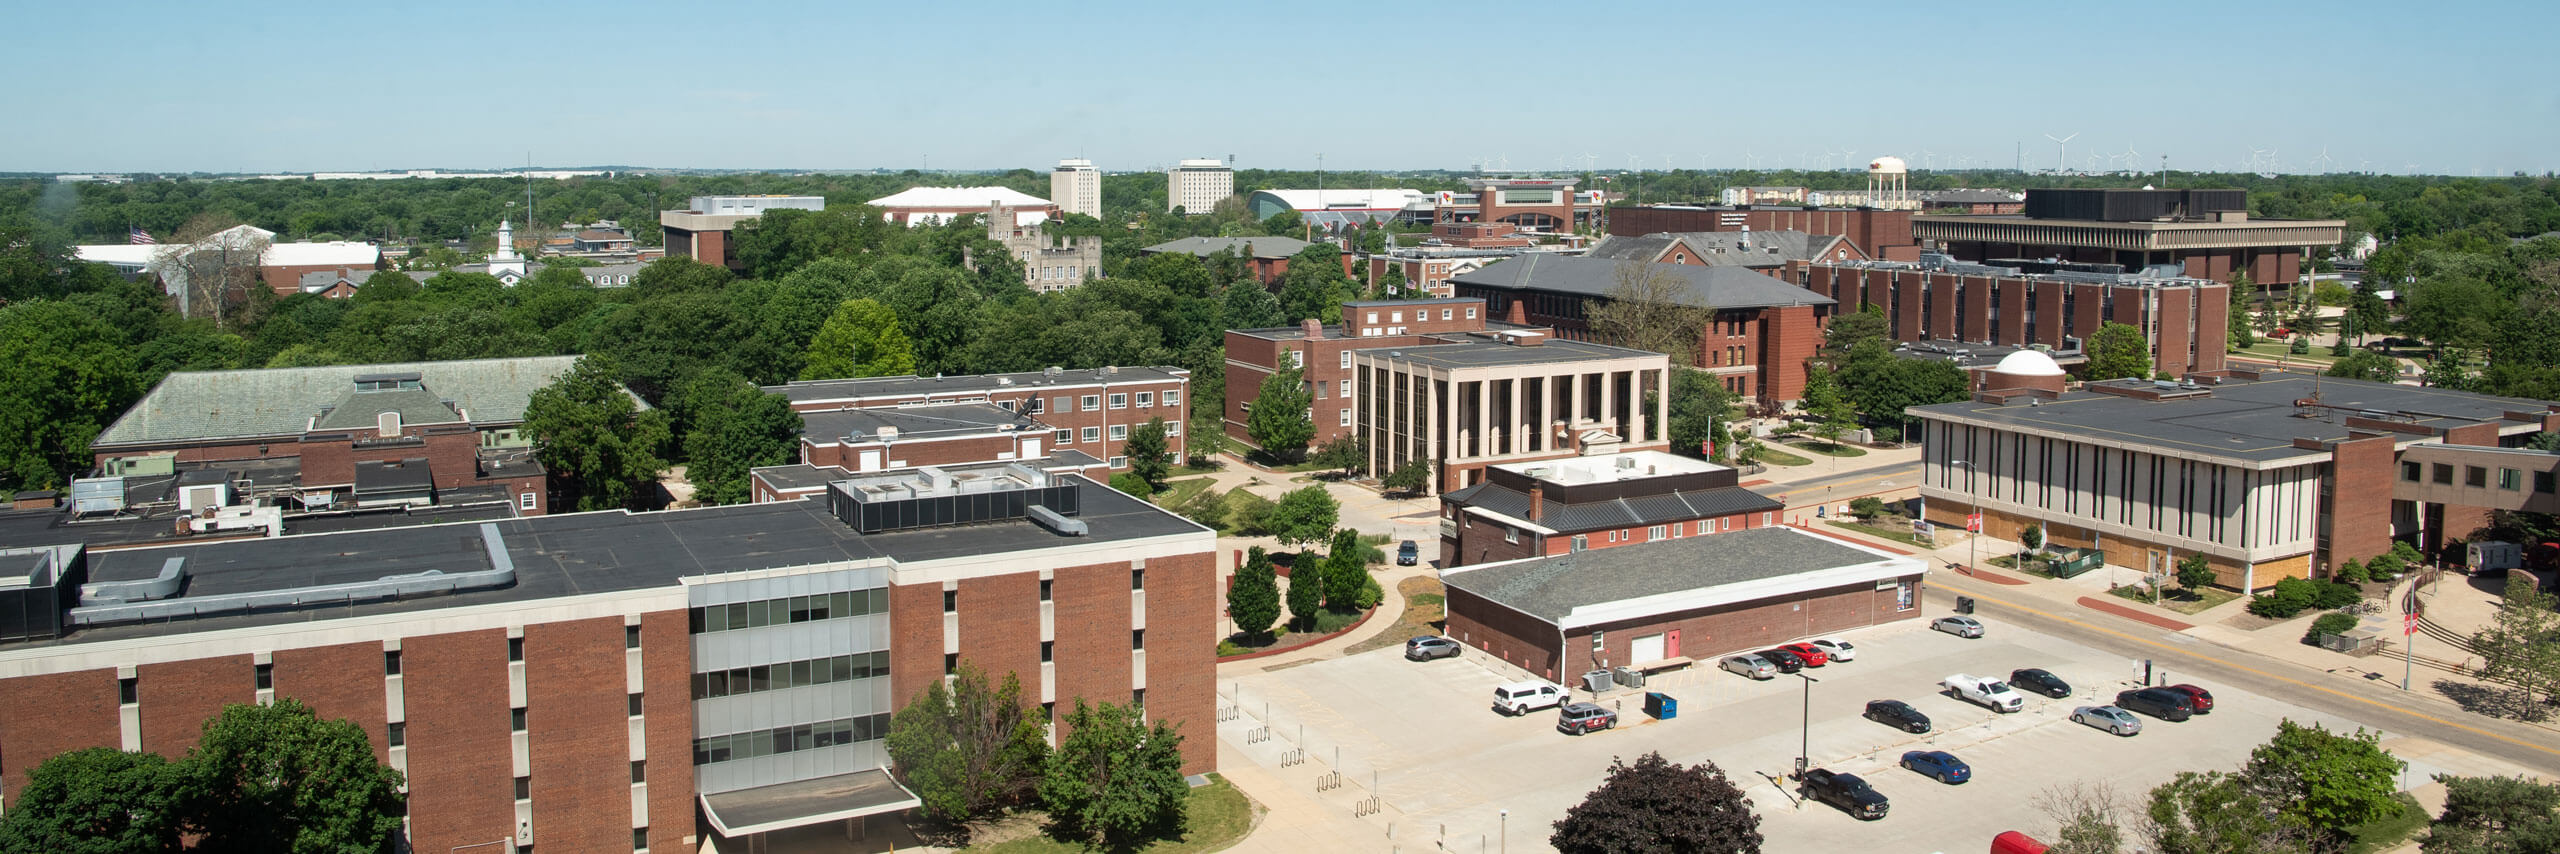 Aerial photo of campus.